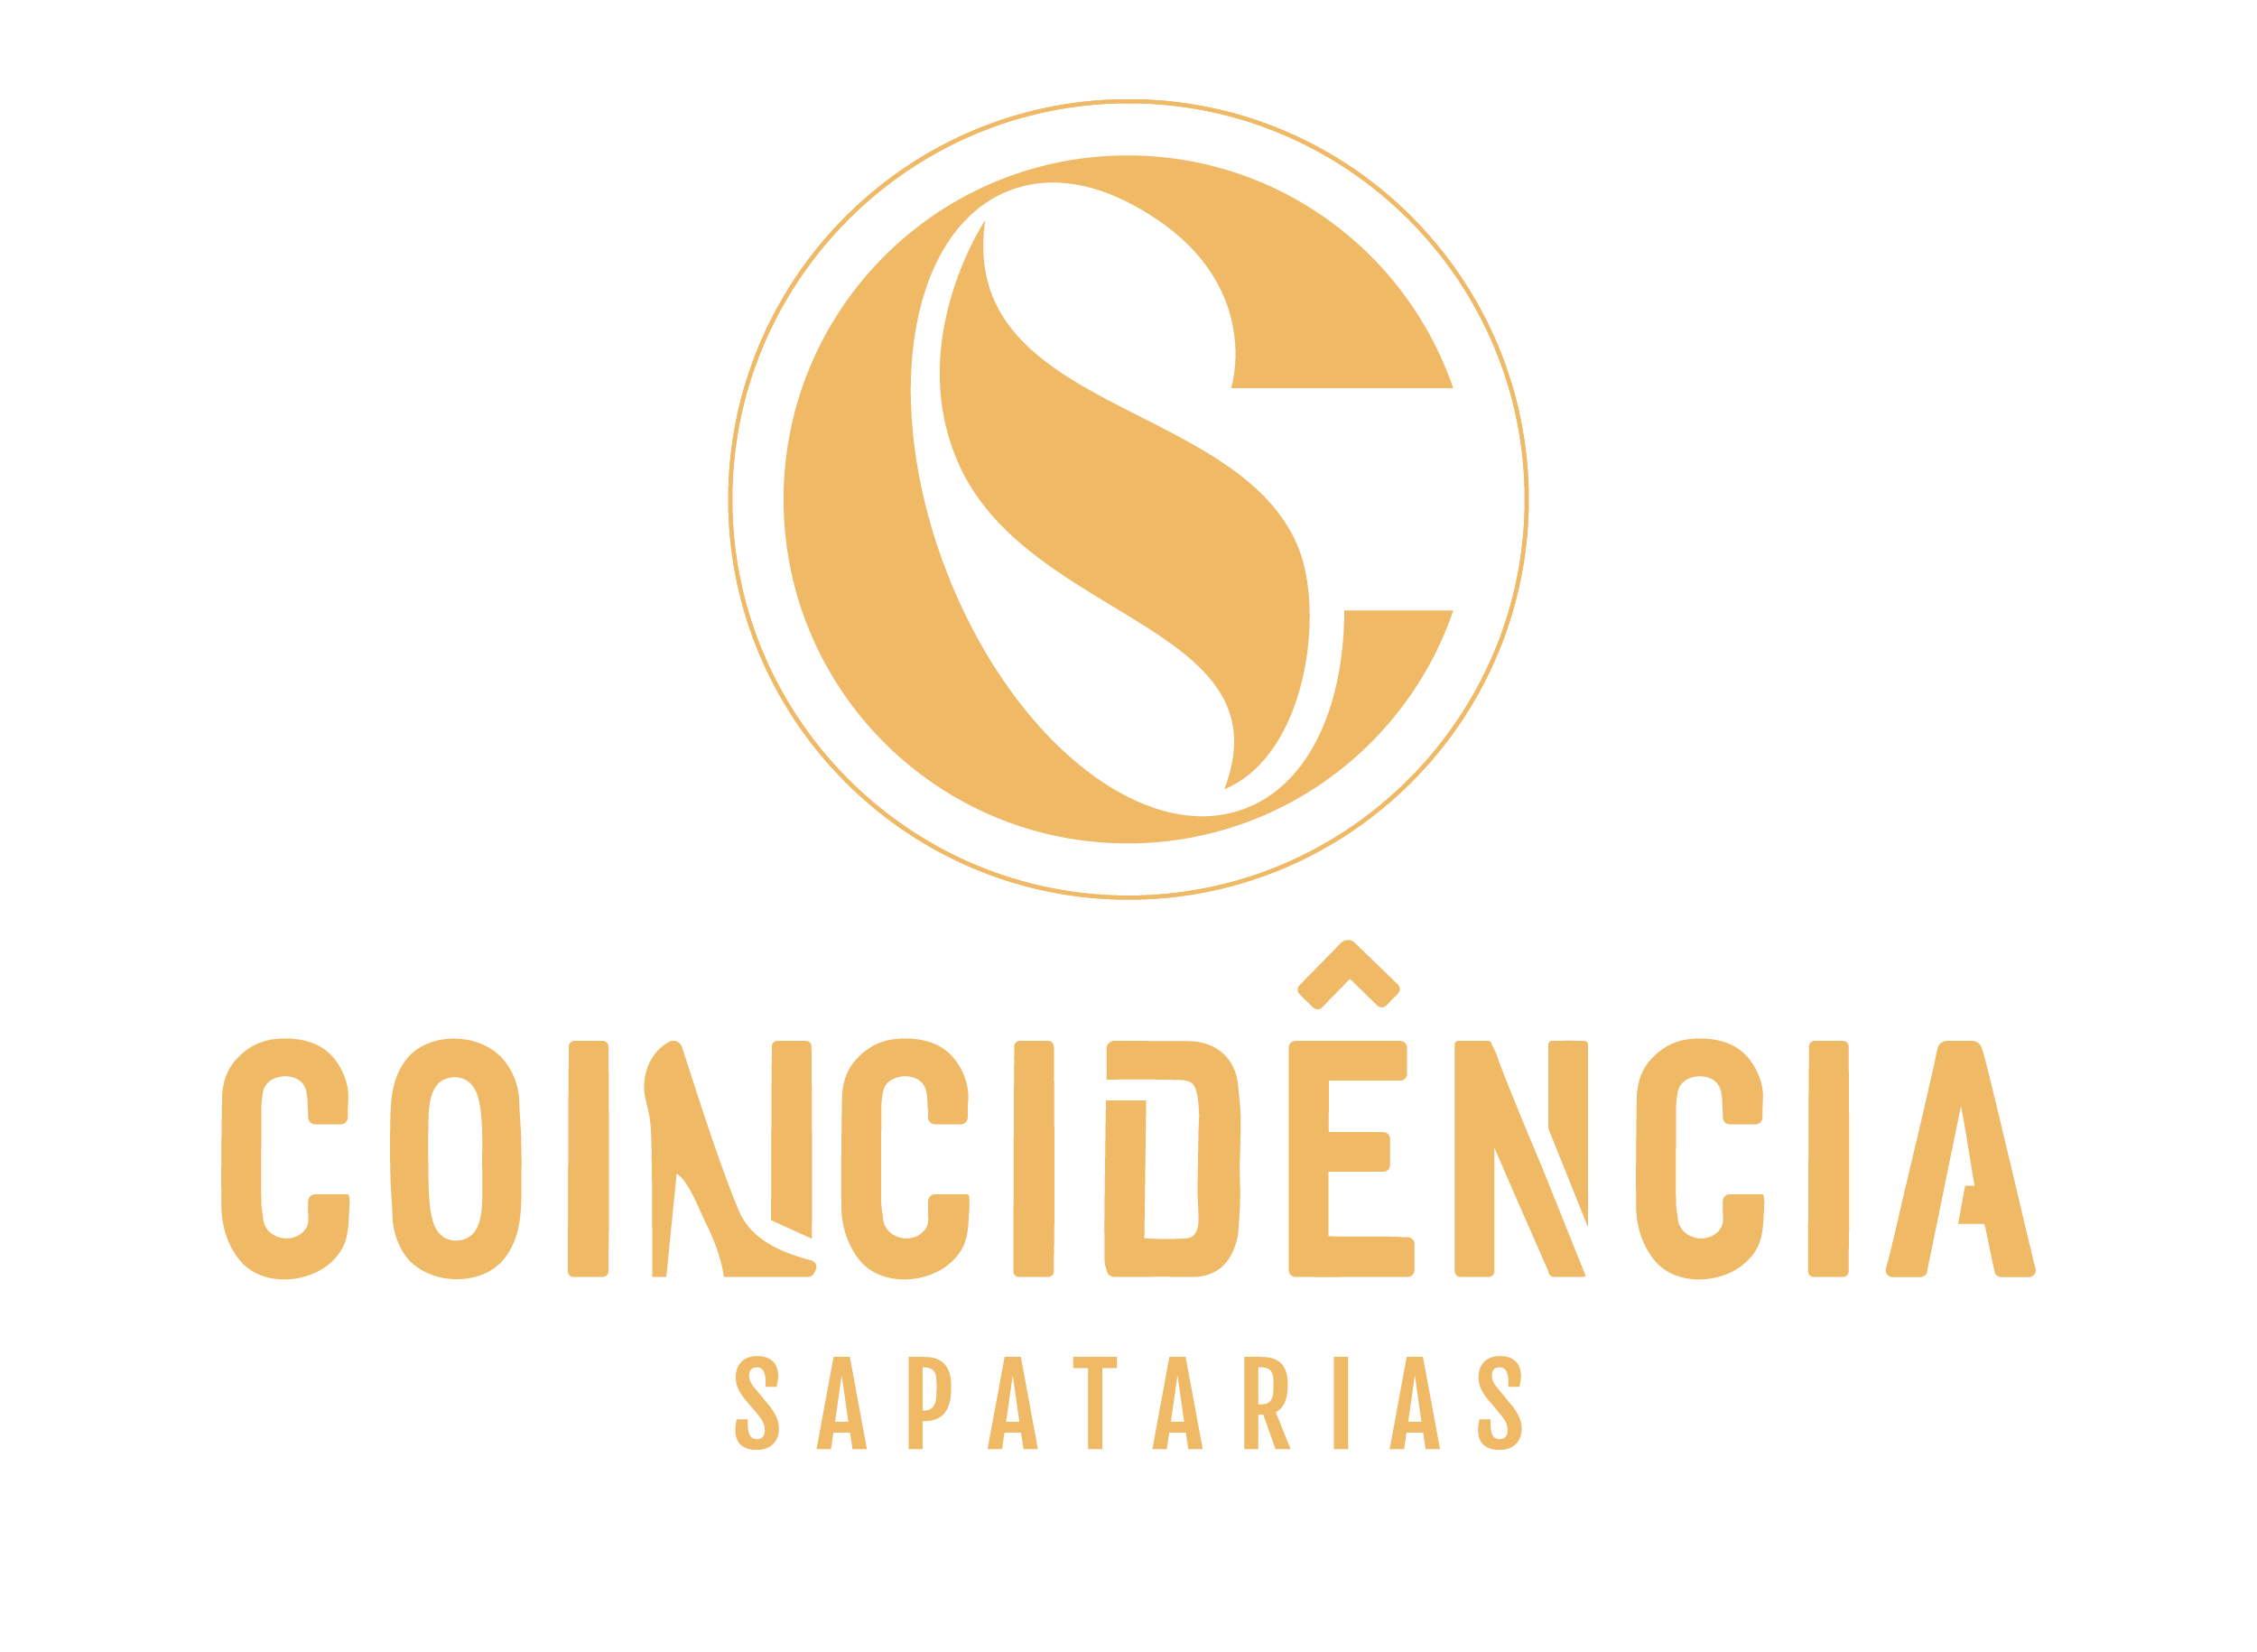 sapatariascoincidencia.com